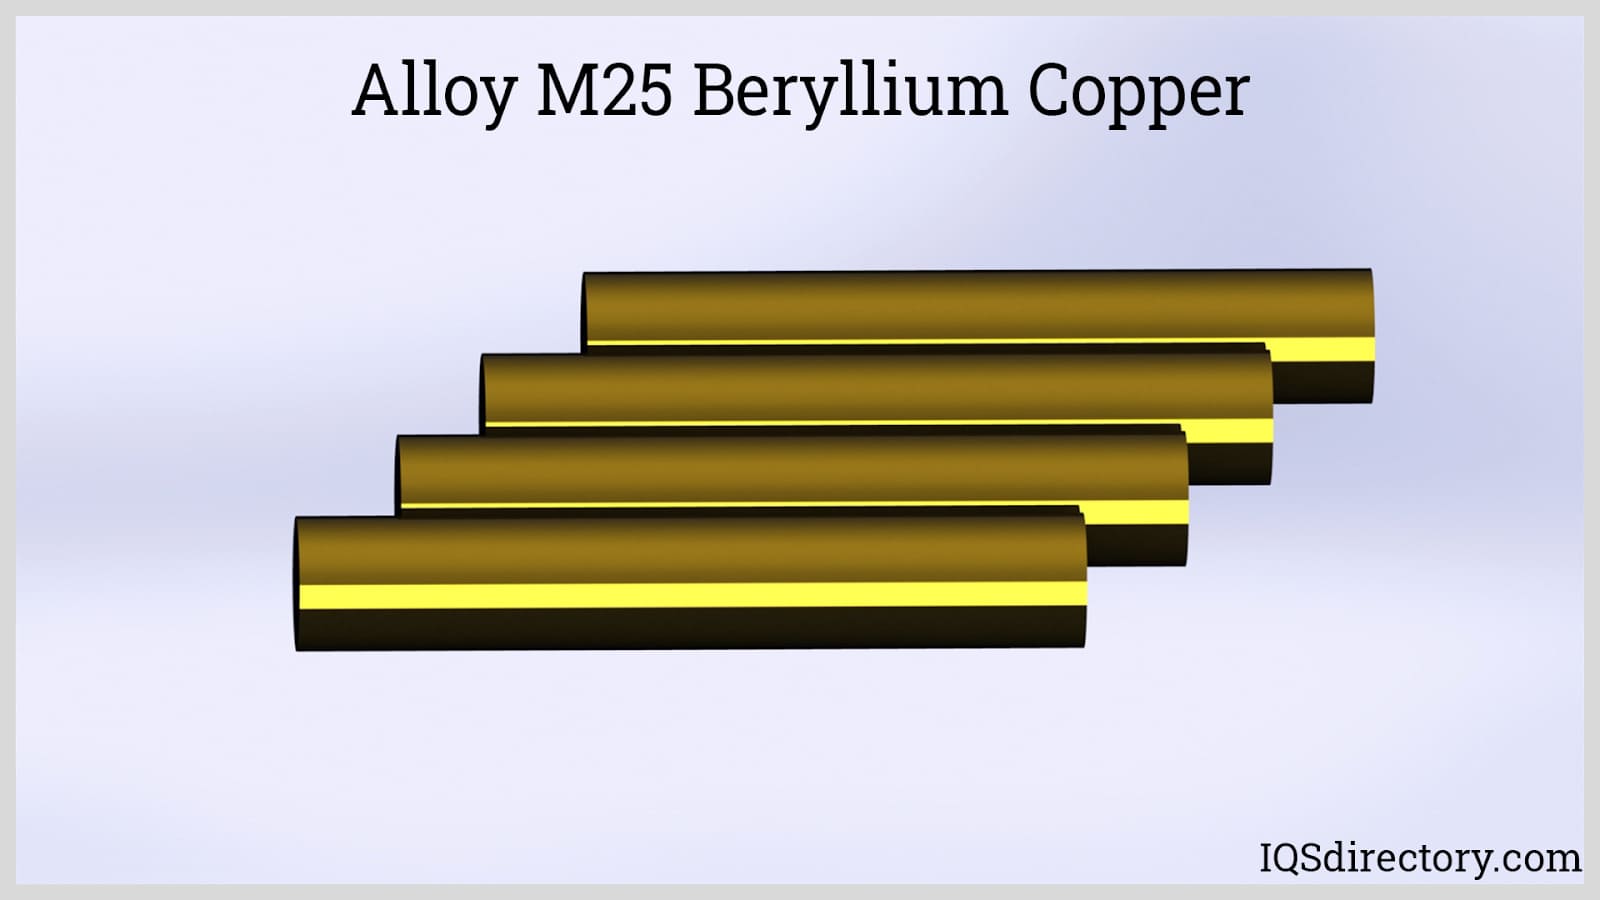 Alloy M25 Beryllium Copper